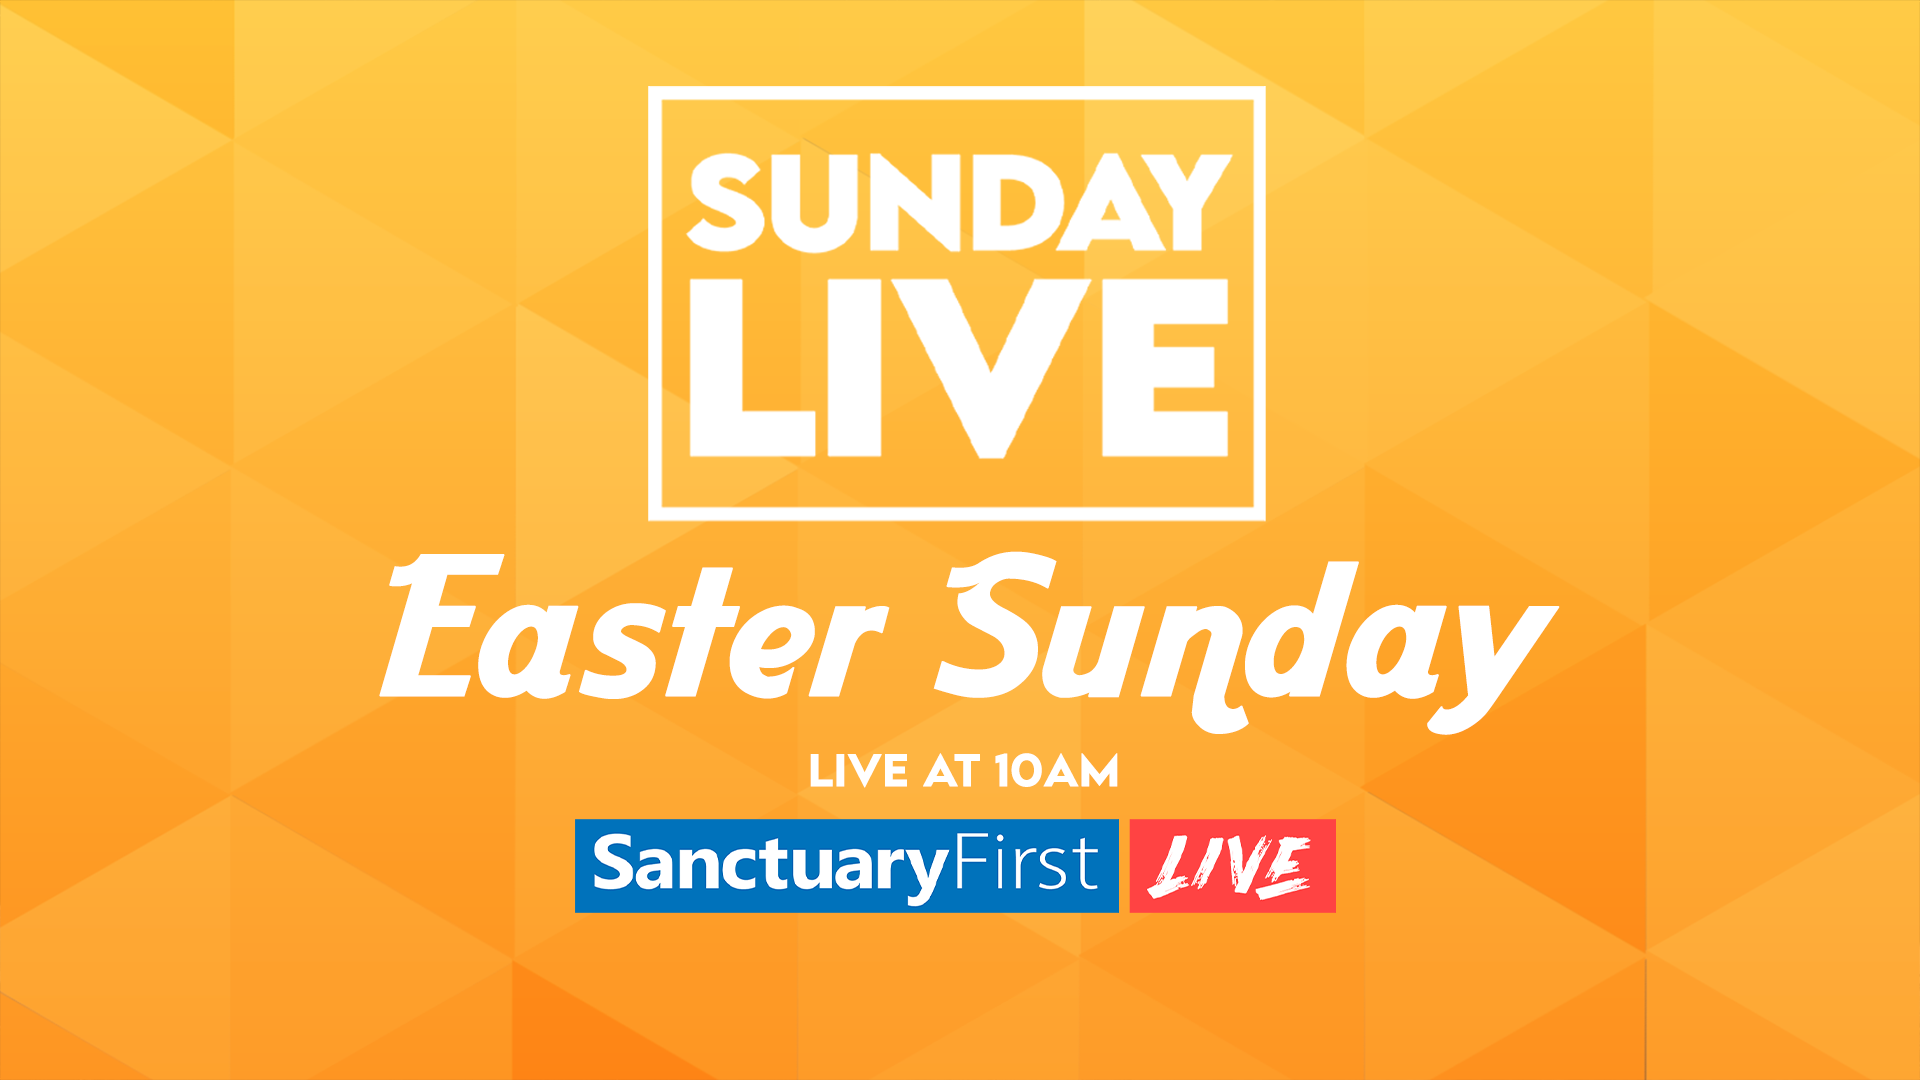 Sunday Live - Easter Sunday